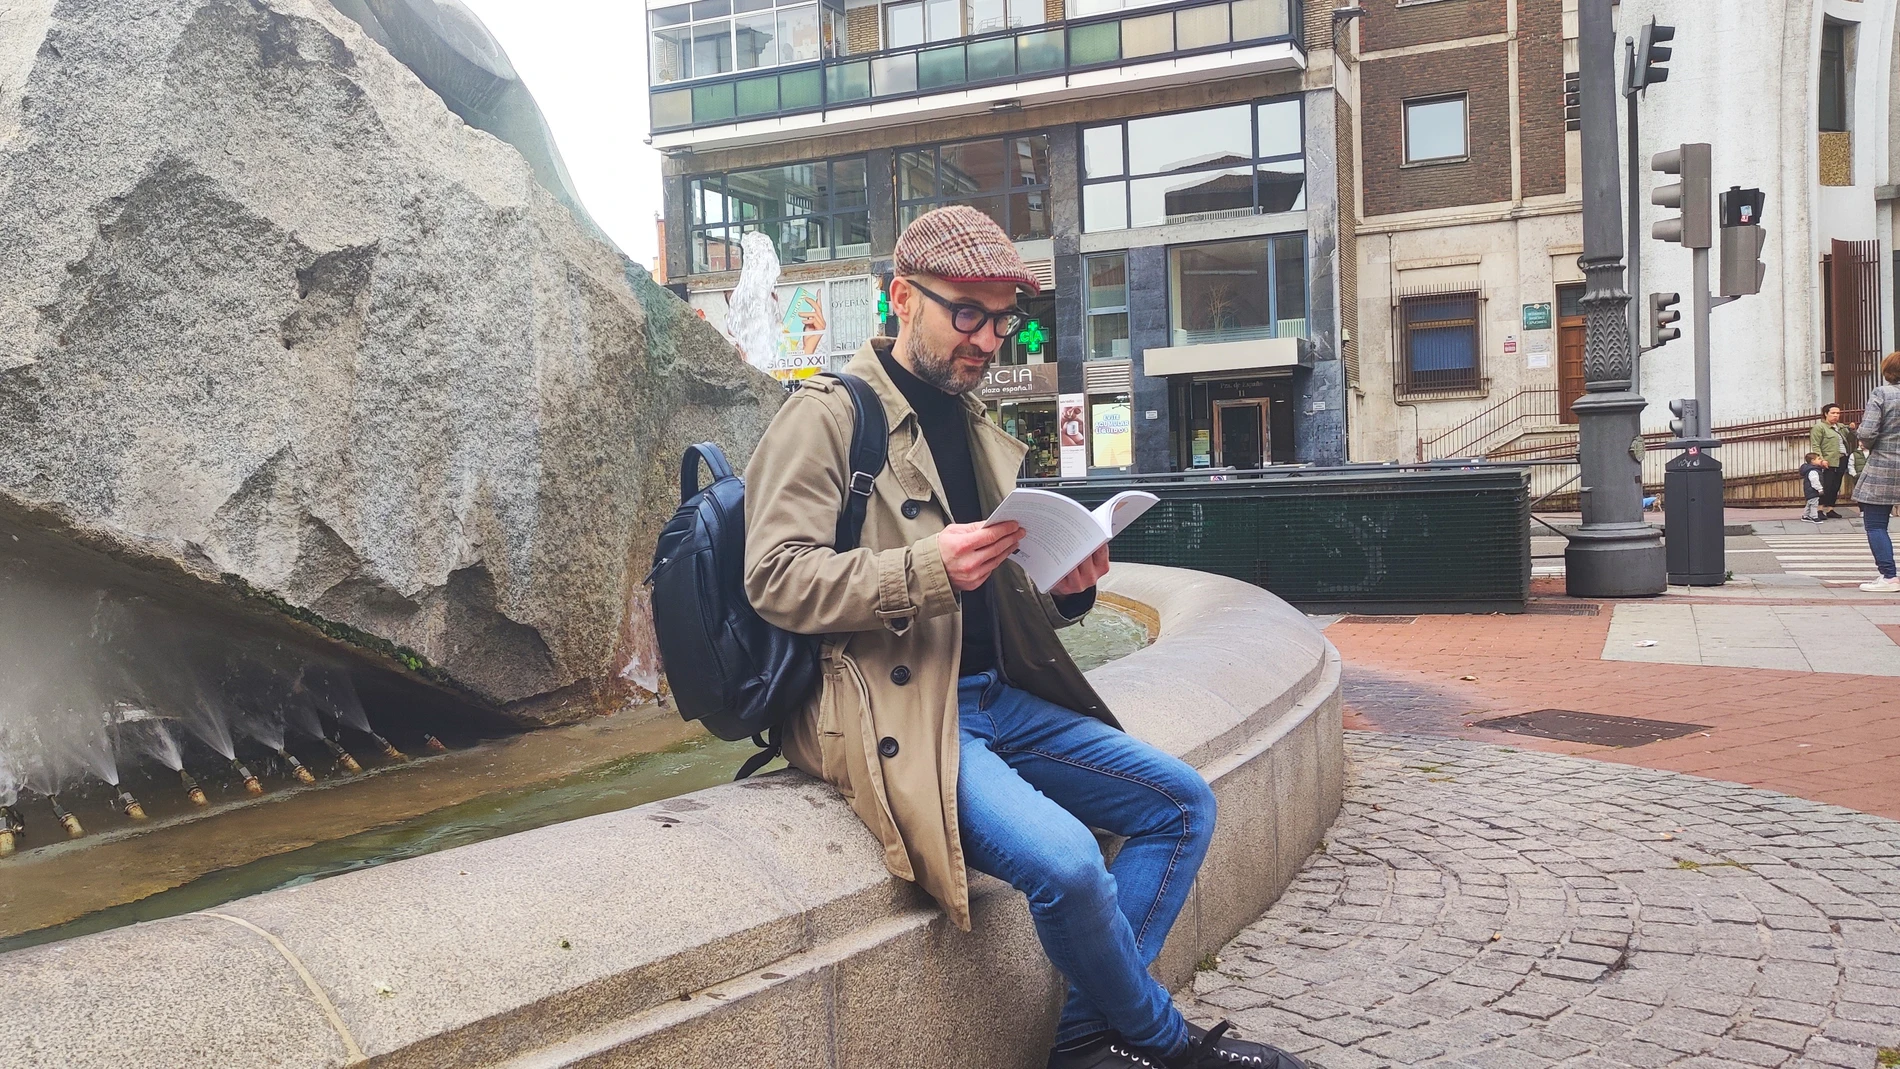 El escritor Roberto Ruiz Antúnez lee unos versos de "Levitación y trance" junto a la escultura de la Plaza España de Valladolid que rinde homenaje al voluntariado social